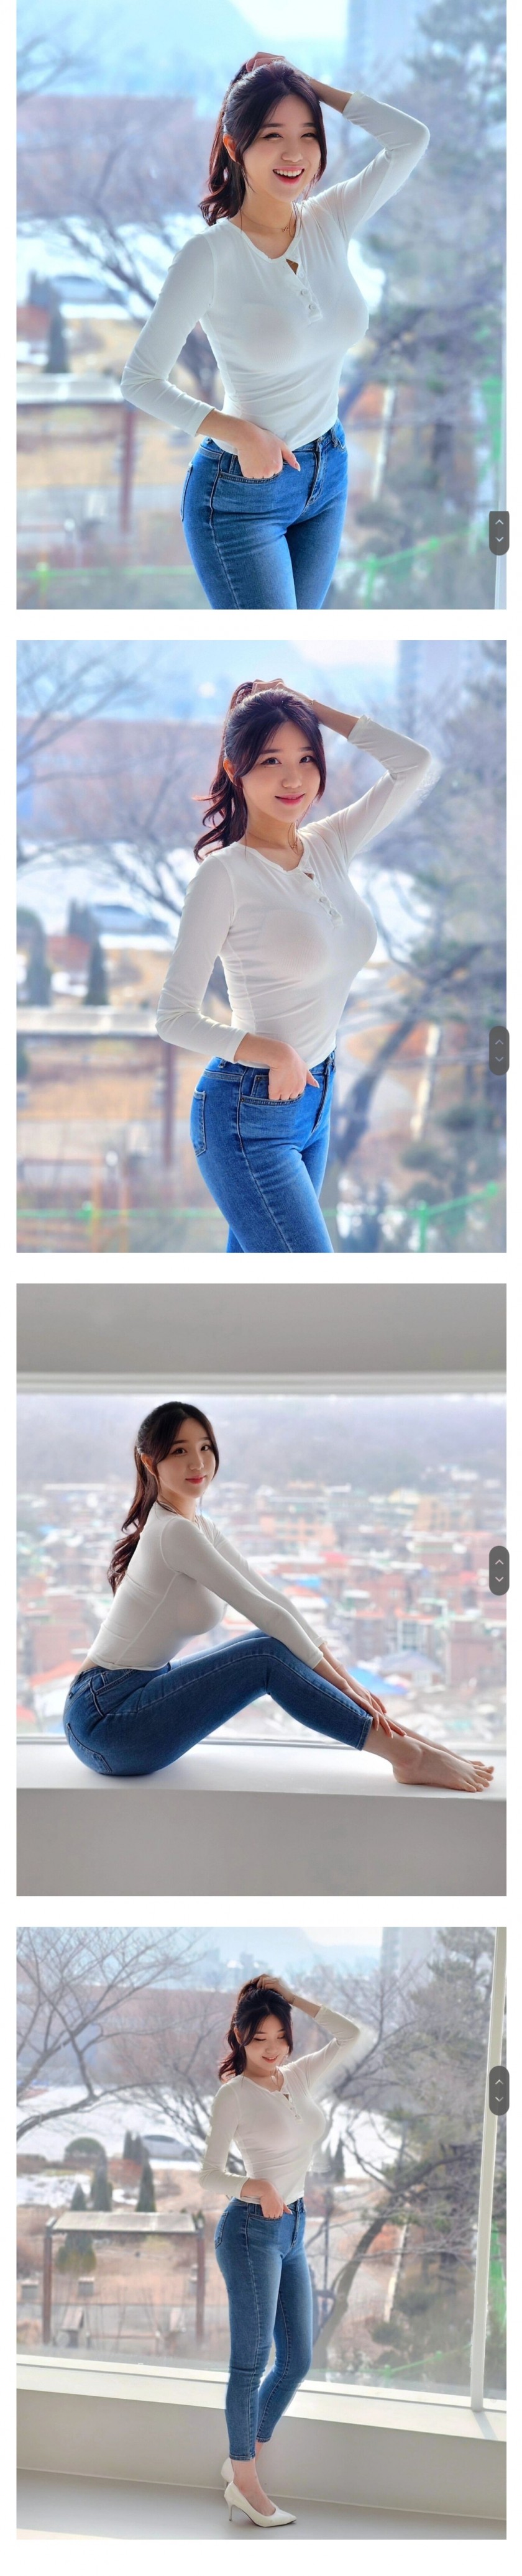 [치어리더] 수원특례시 김현영 치어리더 인스타 흰청 패션